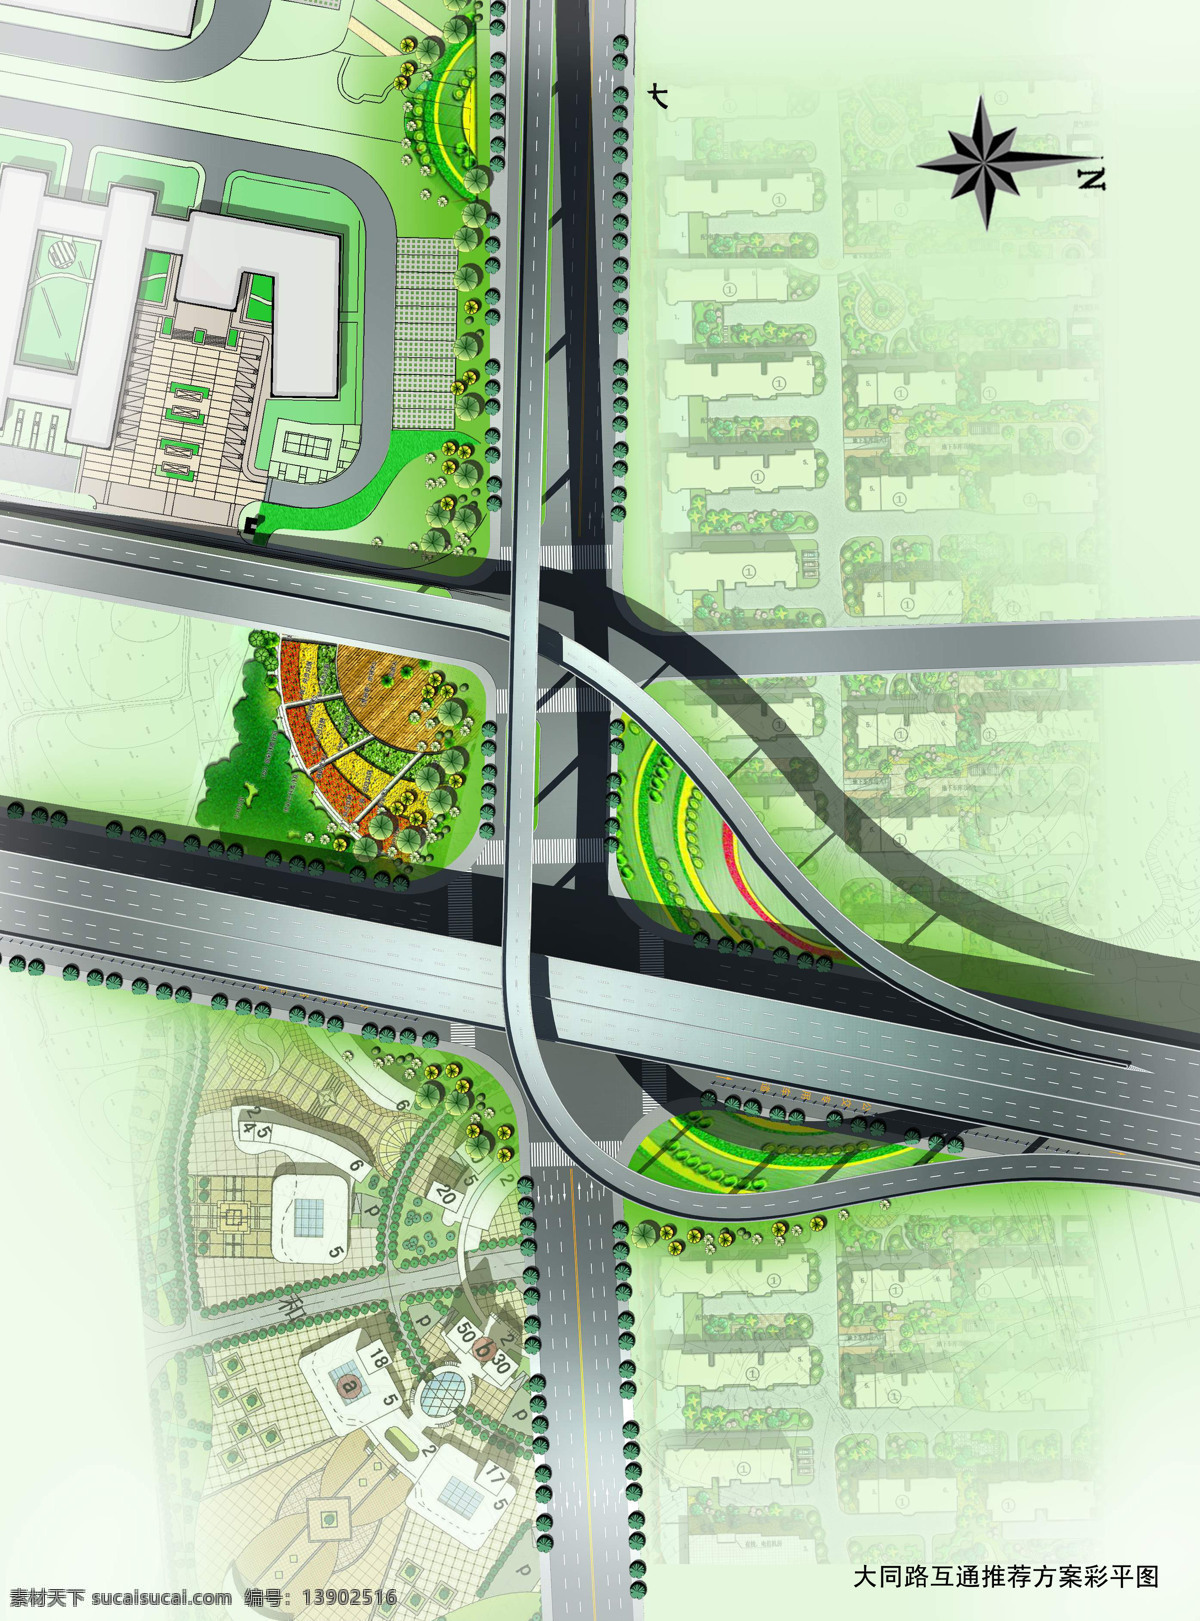 互通 立交 公路 环境设计 平面 效果图 市政 施工图纸 cad素材 建筑图纸